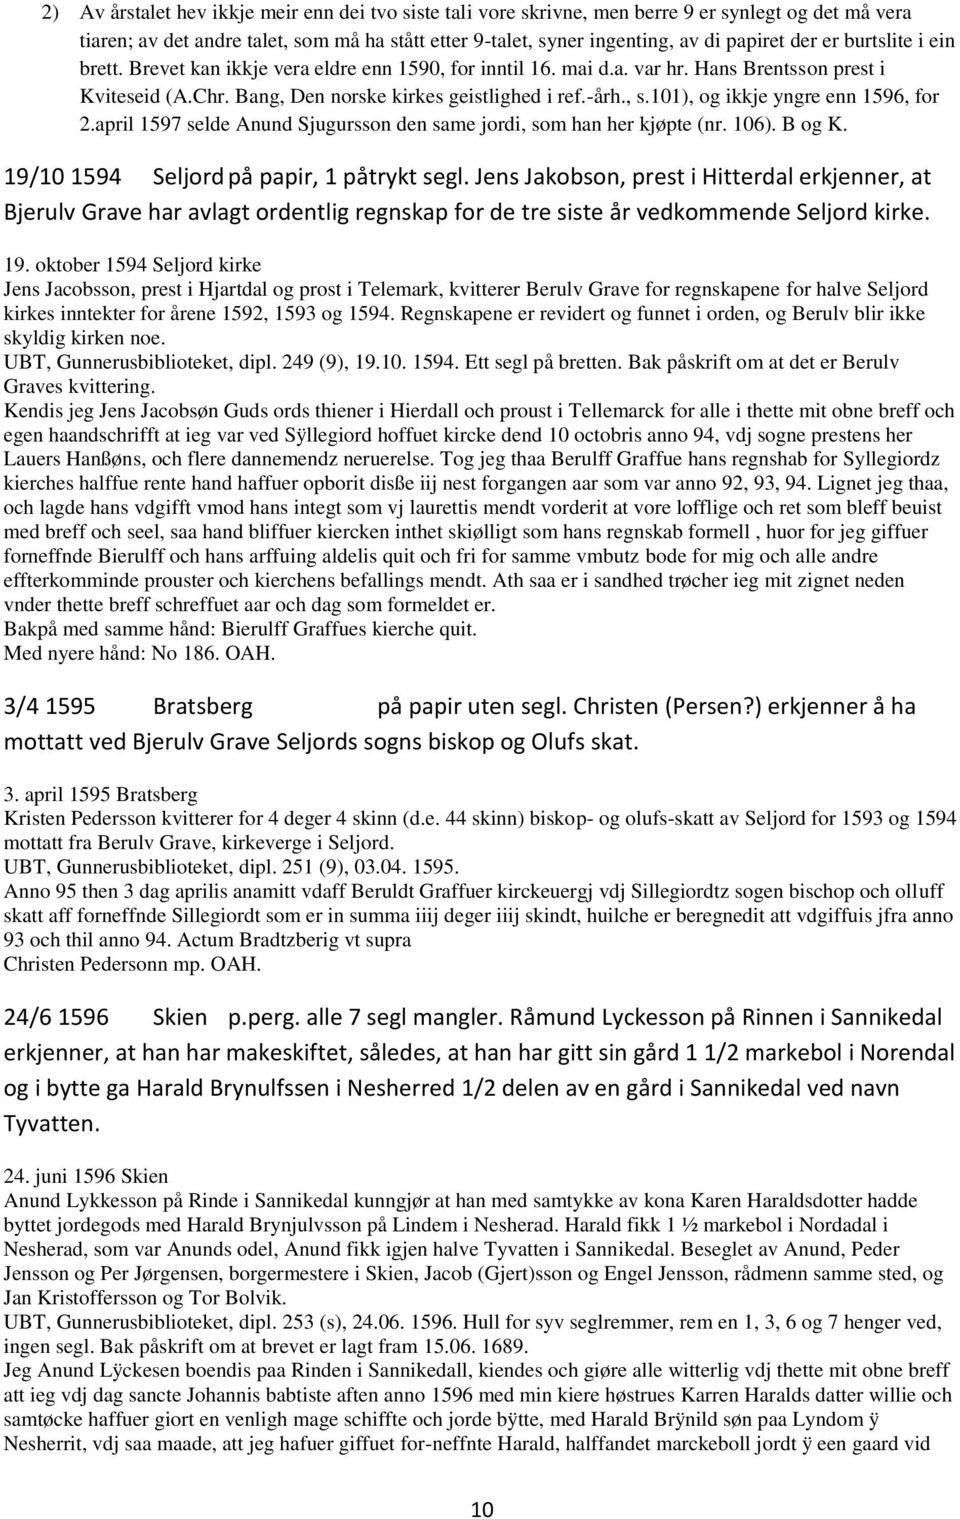 101), og ikkje yngre enn 1596, for 2.april 1597 selde Anund Sjugursson den same jordi, som han her kjøpte (nr. 106). B og K. 19/10 1594 Seljord på papir, 1 påtrykt segl.